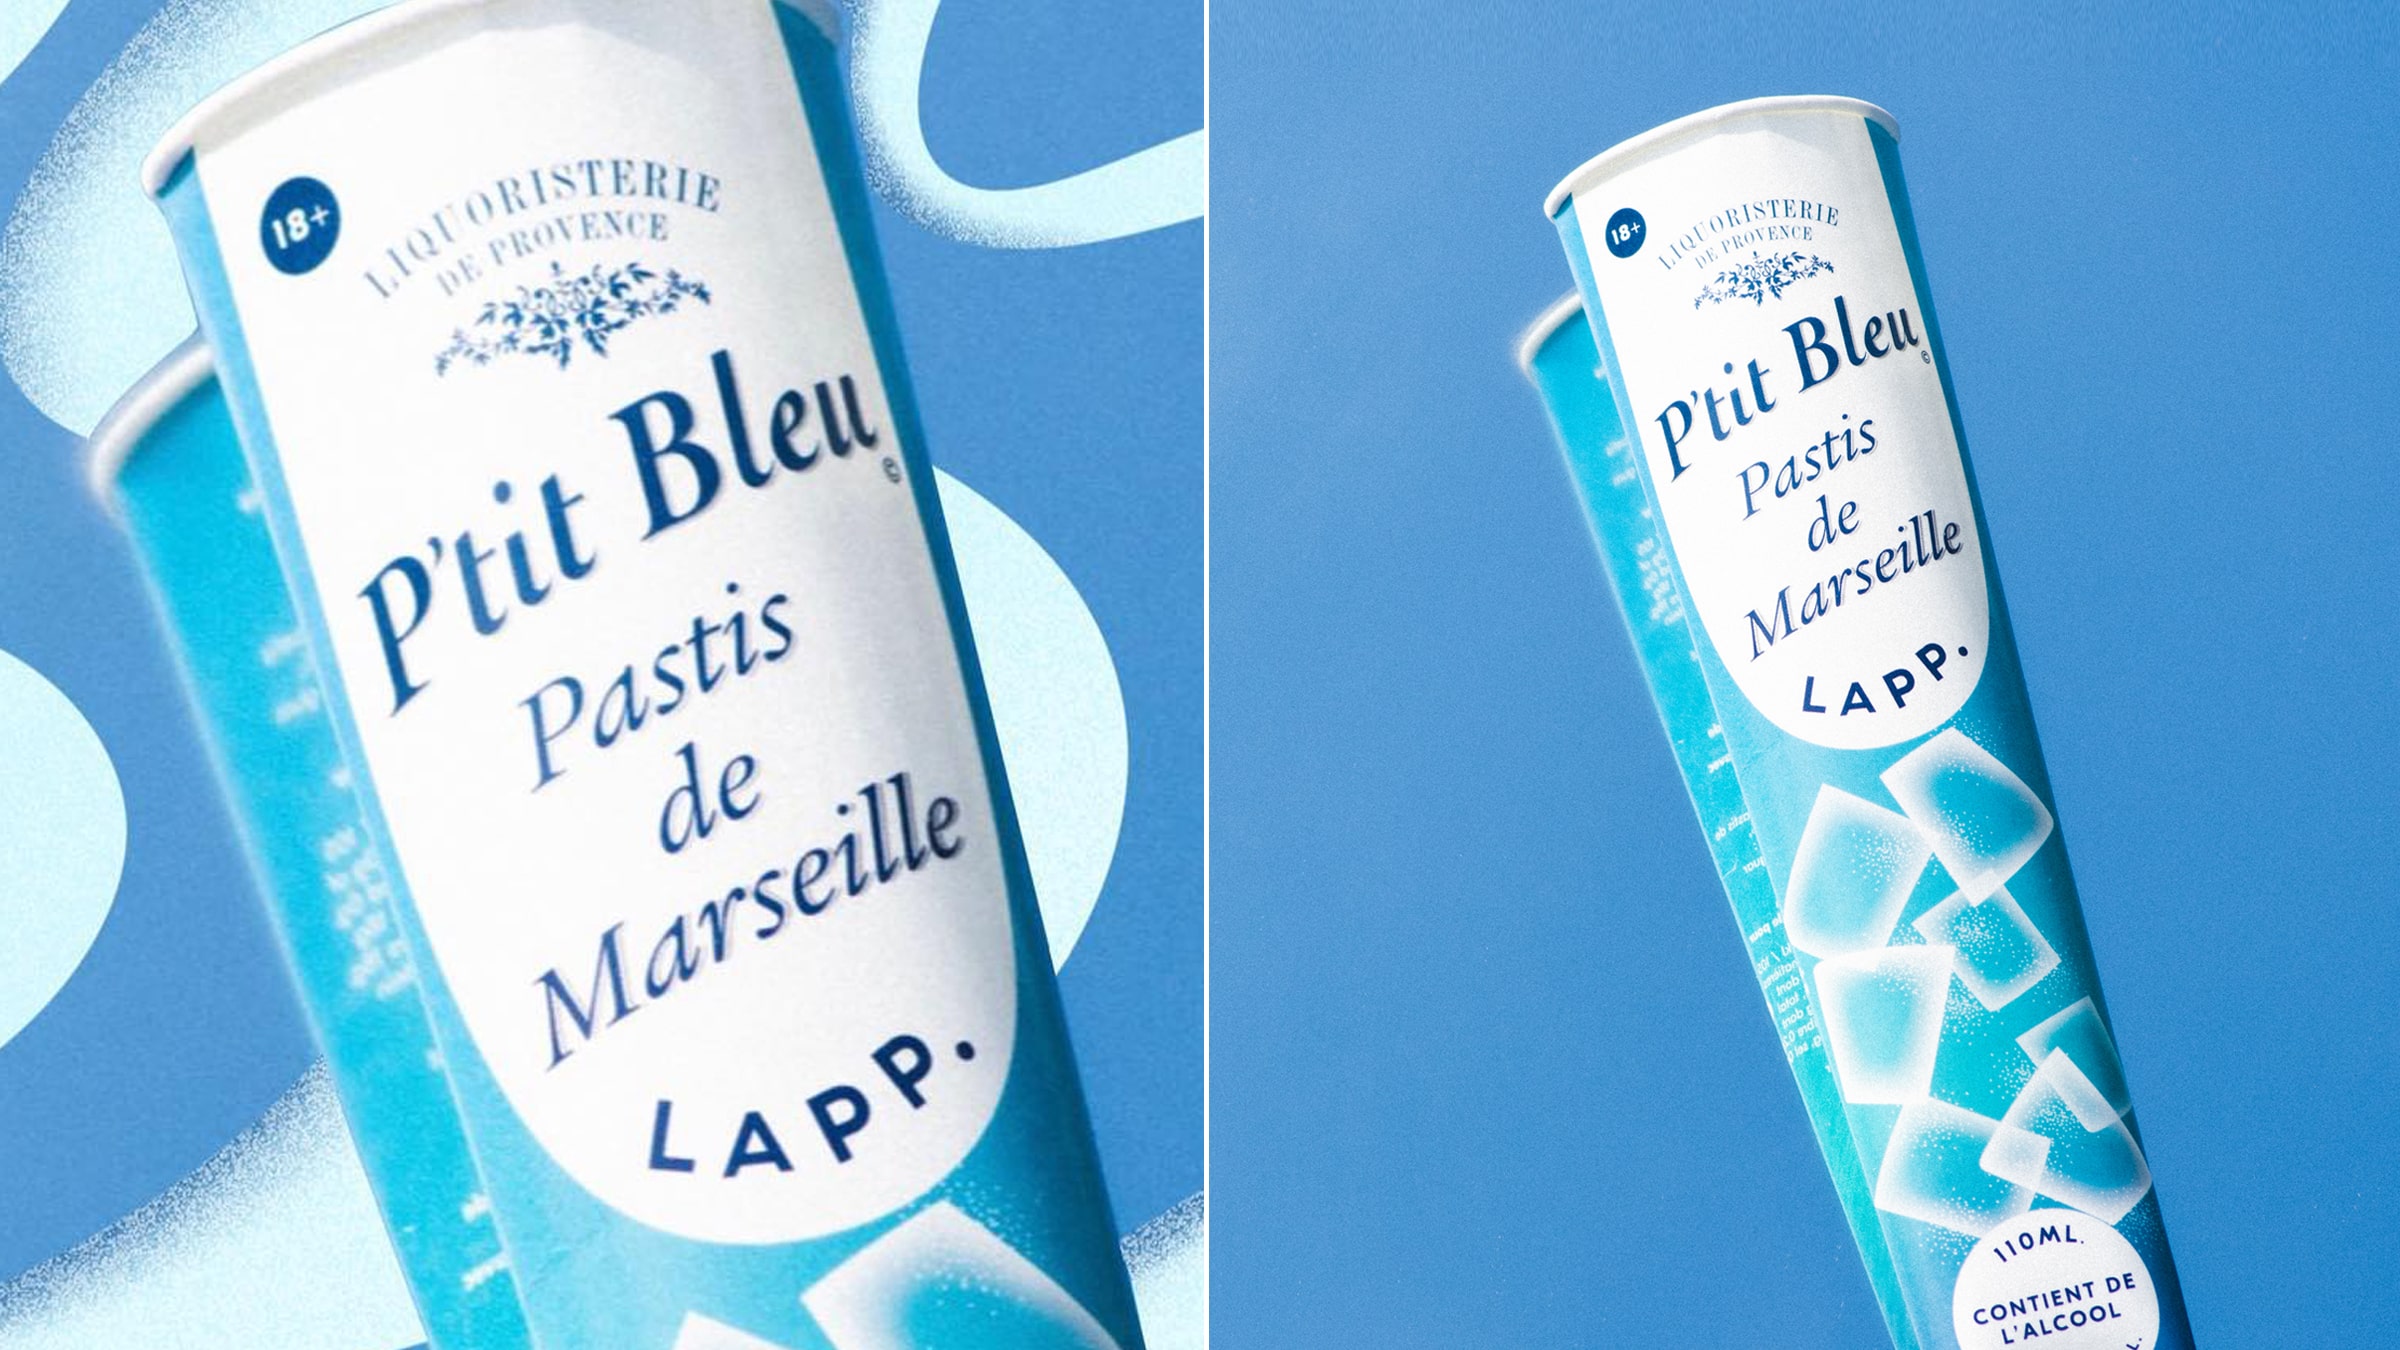 P'tit Blue Pastis de Marseille